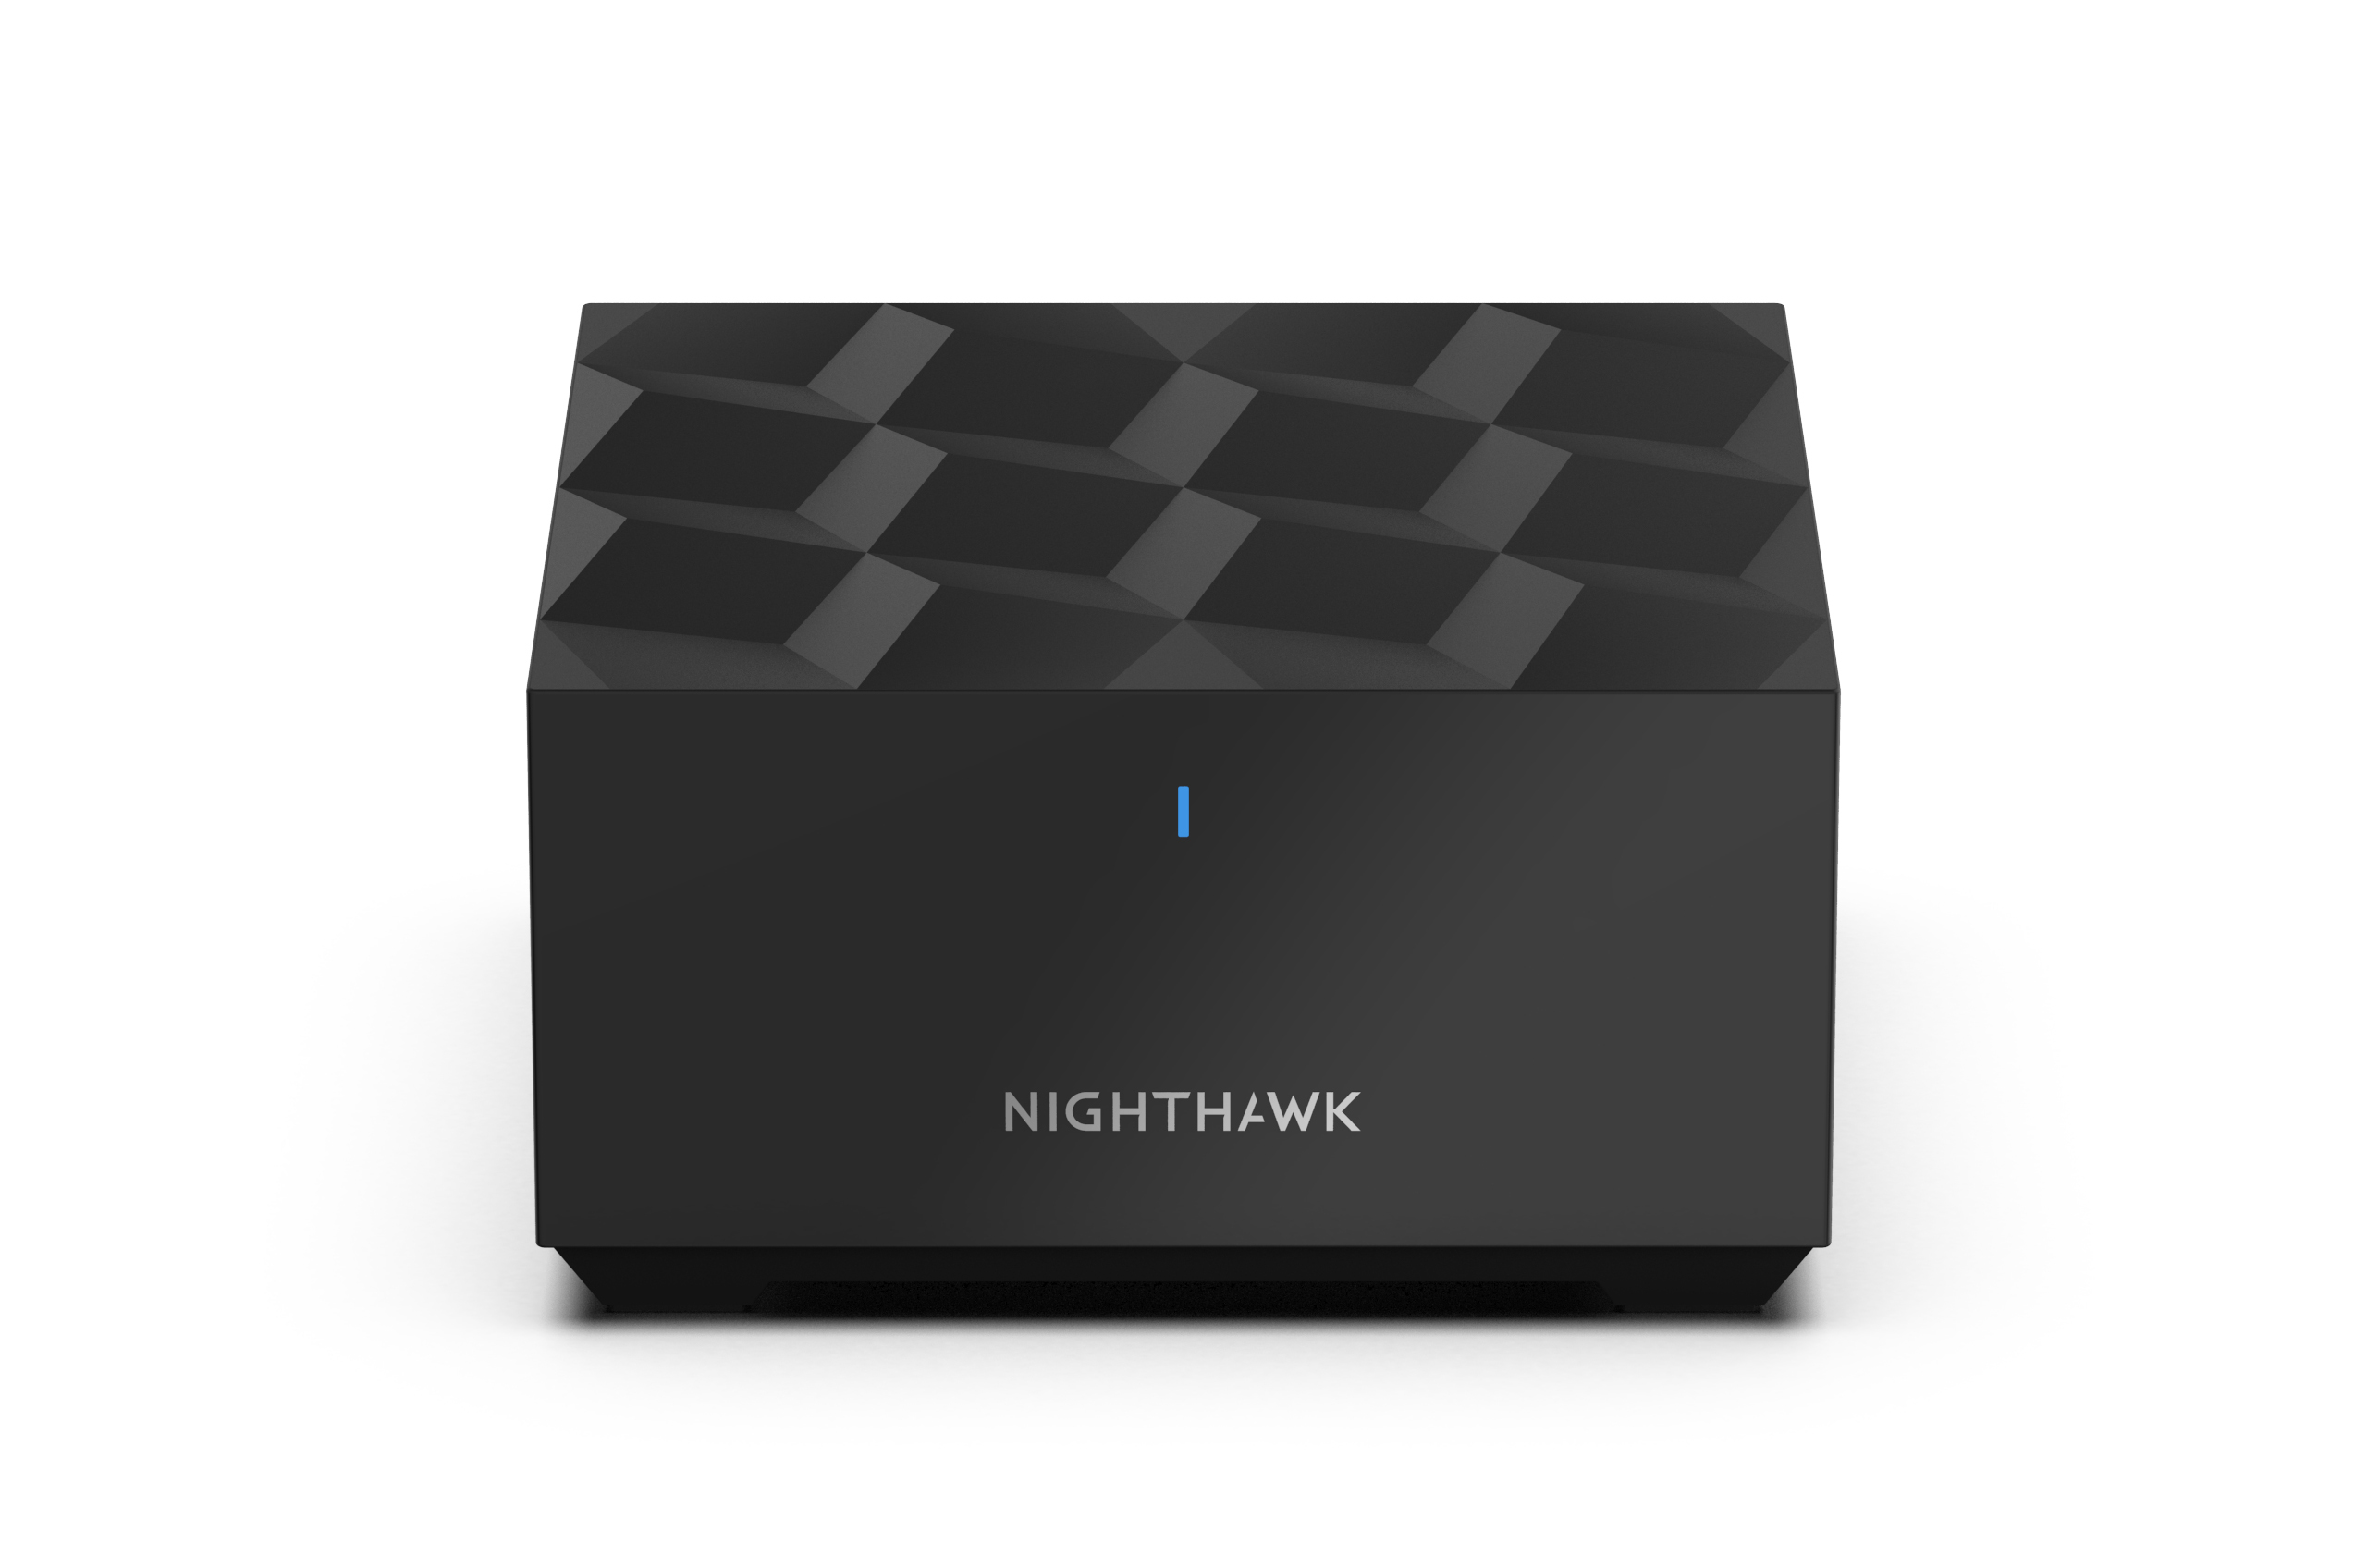 Nighthawk MK6 by NETGEAR